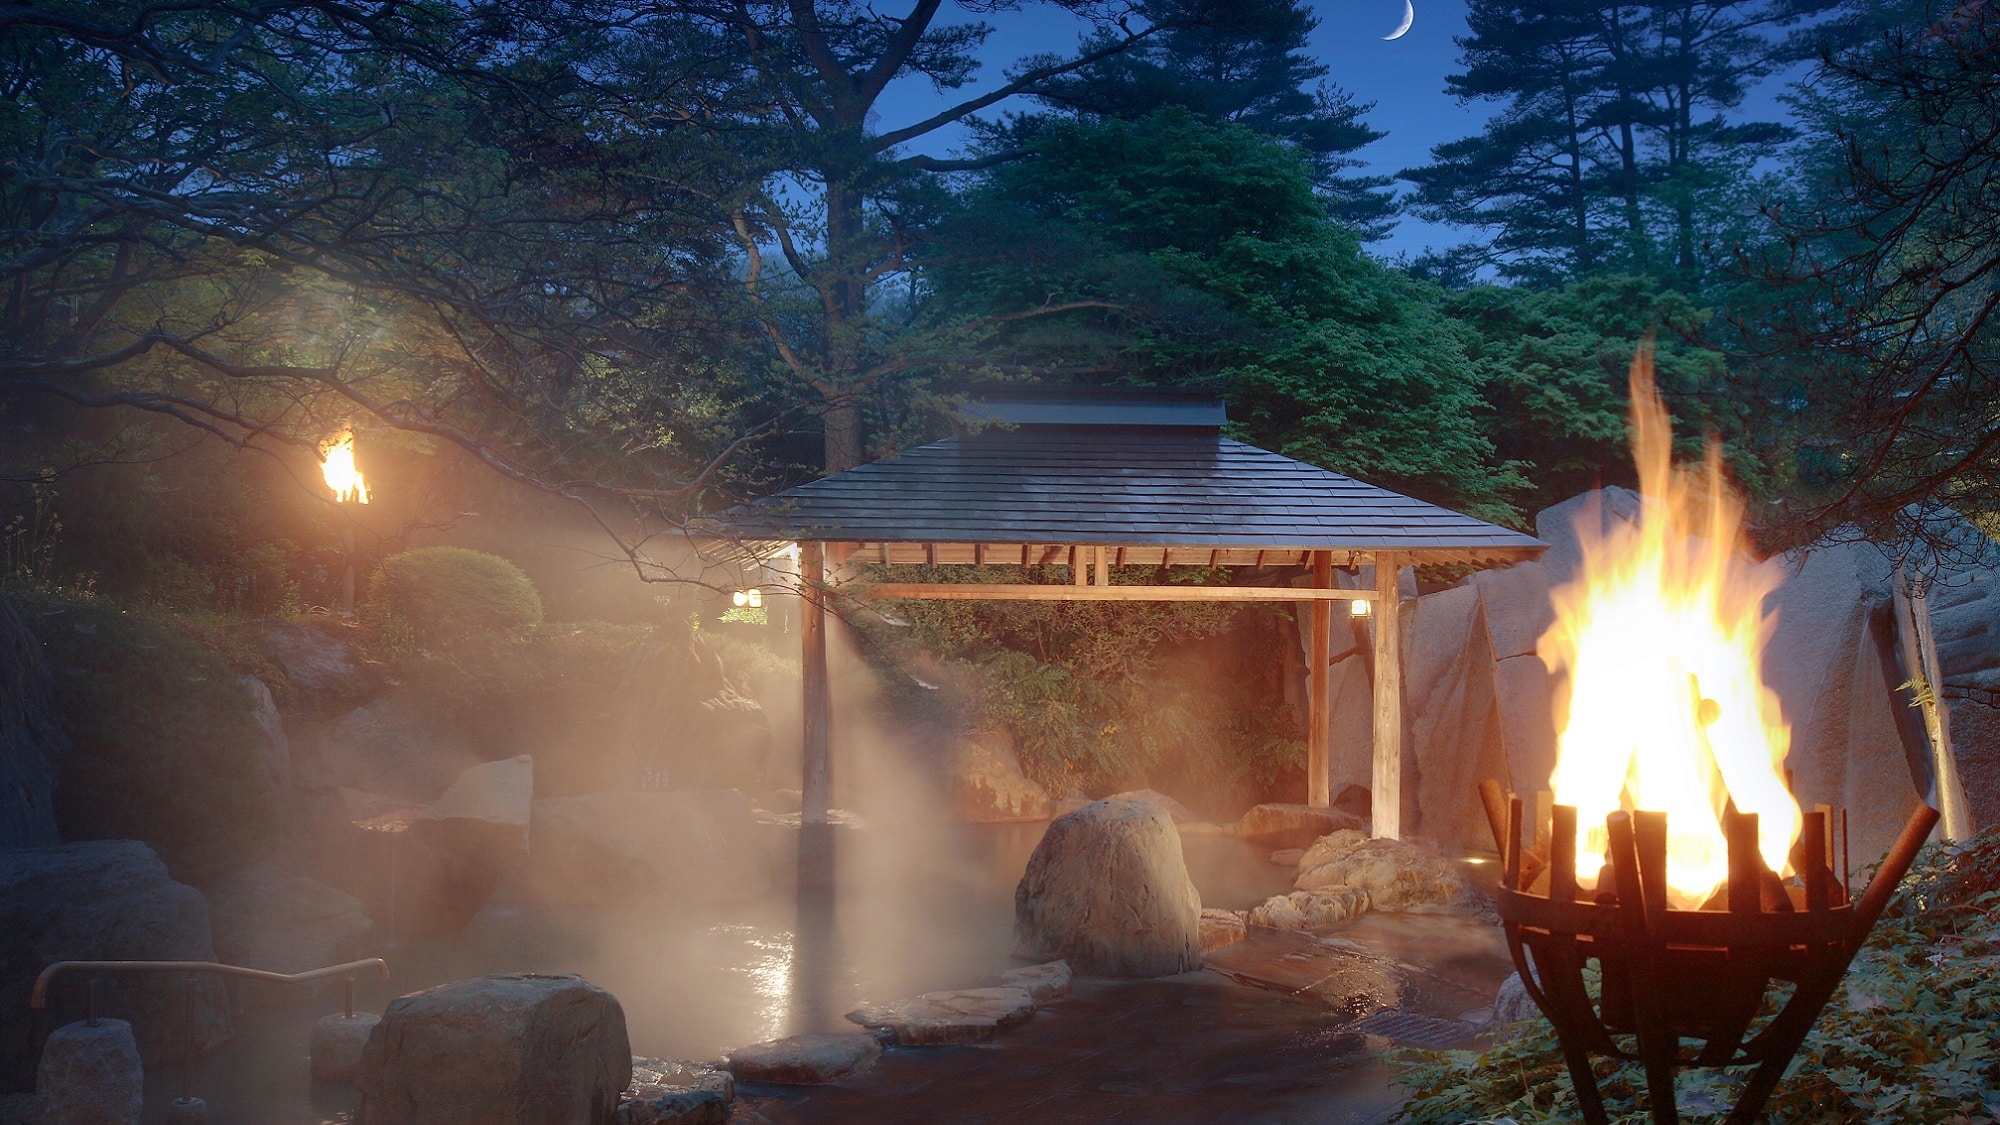 The open-air bath "Kagari no Yu" is lit from dusk.